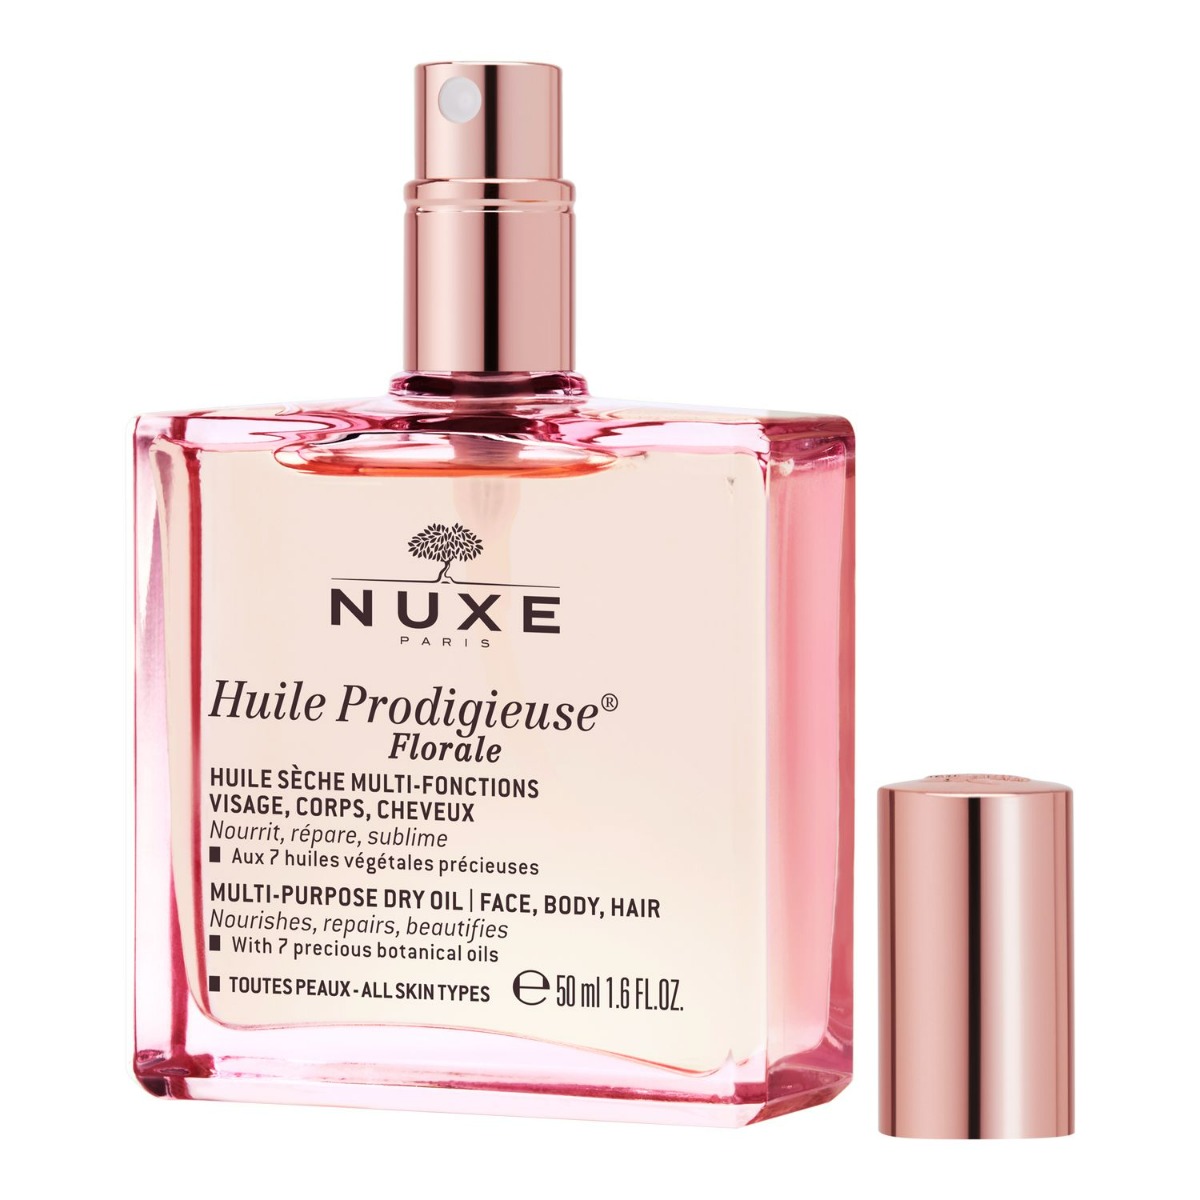 Nuxe Huile Prodigieuse Florale multifunkcyjny suchy olejek do twarzy ciała i włosów 50 ml